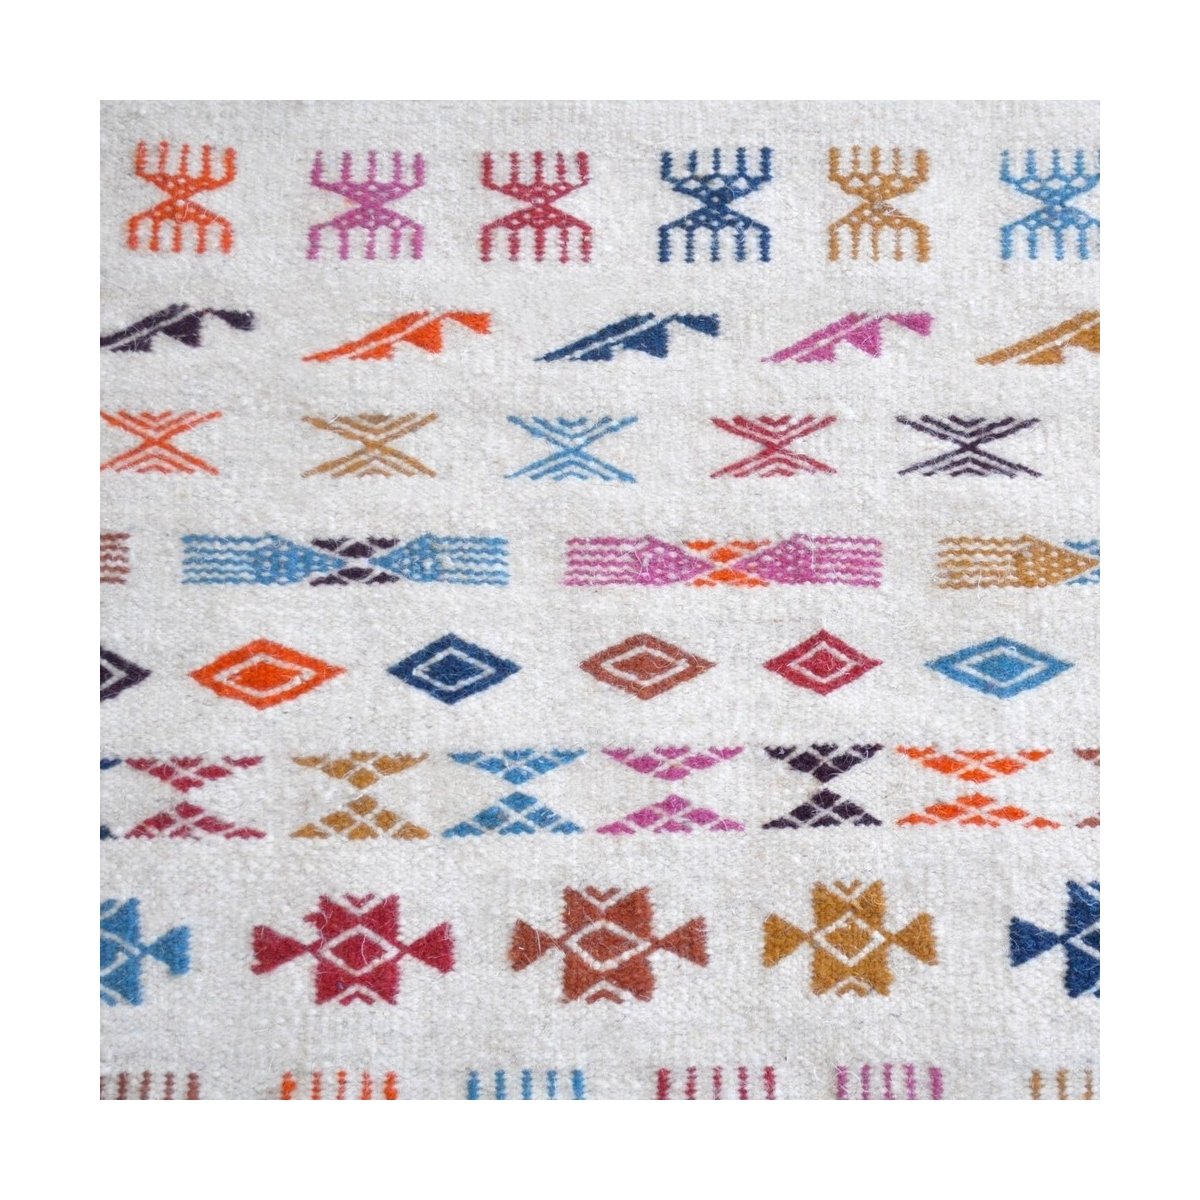 Berber tapijt Tapijt Kilim Salha 140x200 Wit/Veelkleurig (Handgeweven, Wol, Tunesië) Tunesisch Kilim Tapijt uit de stad Kairouan